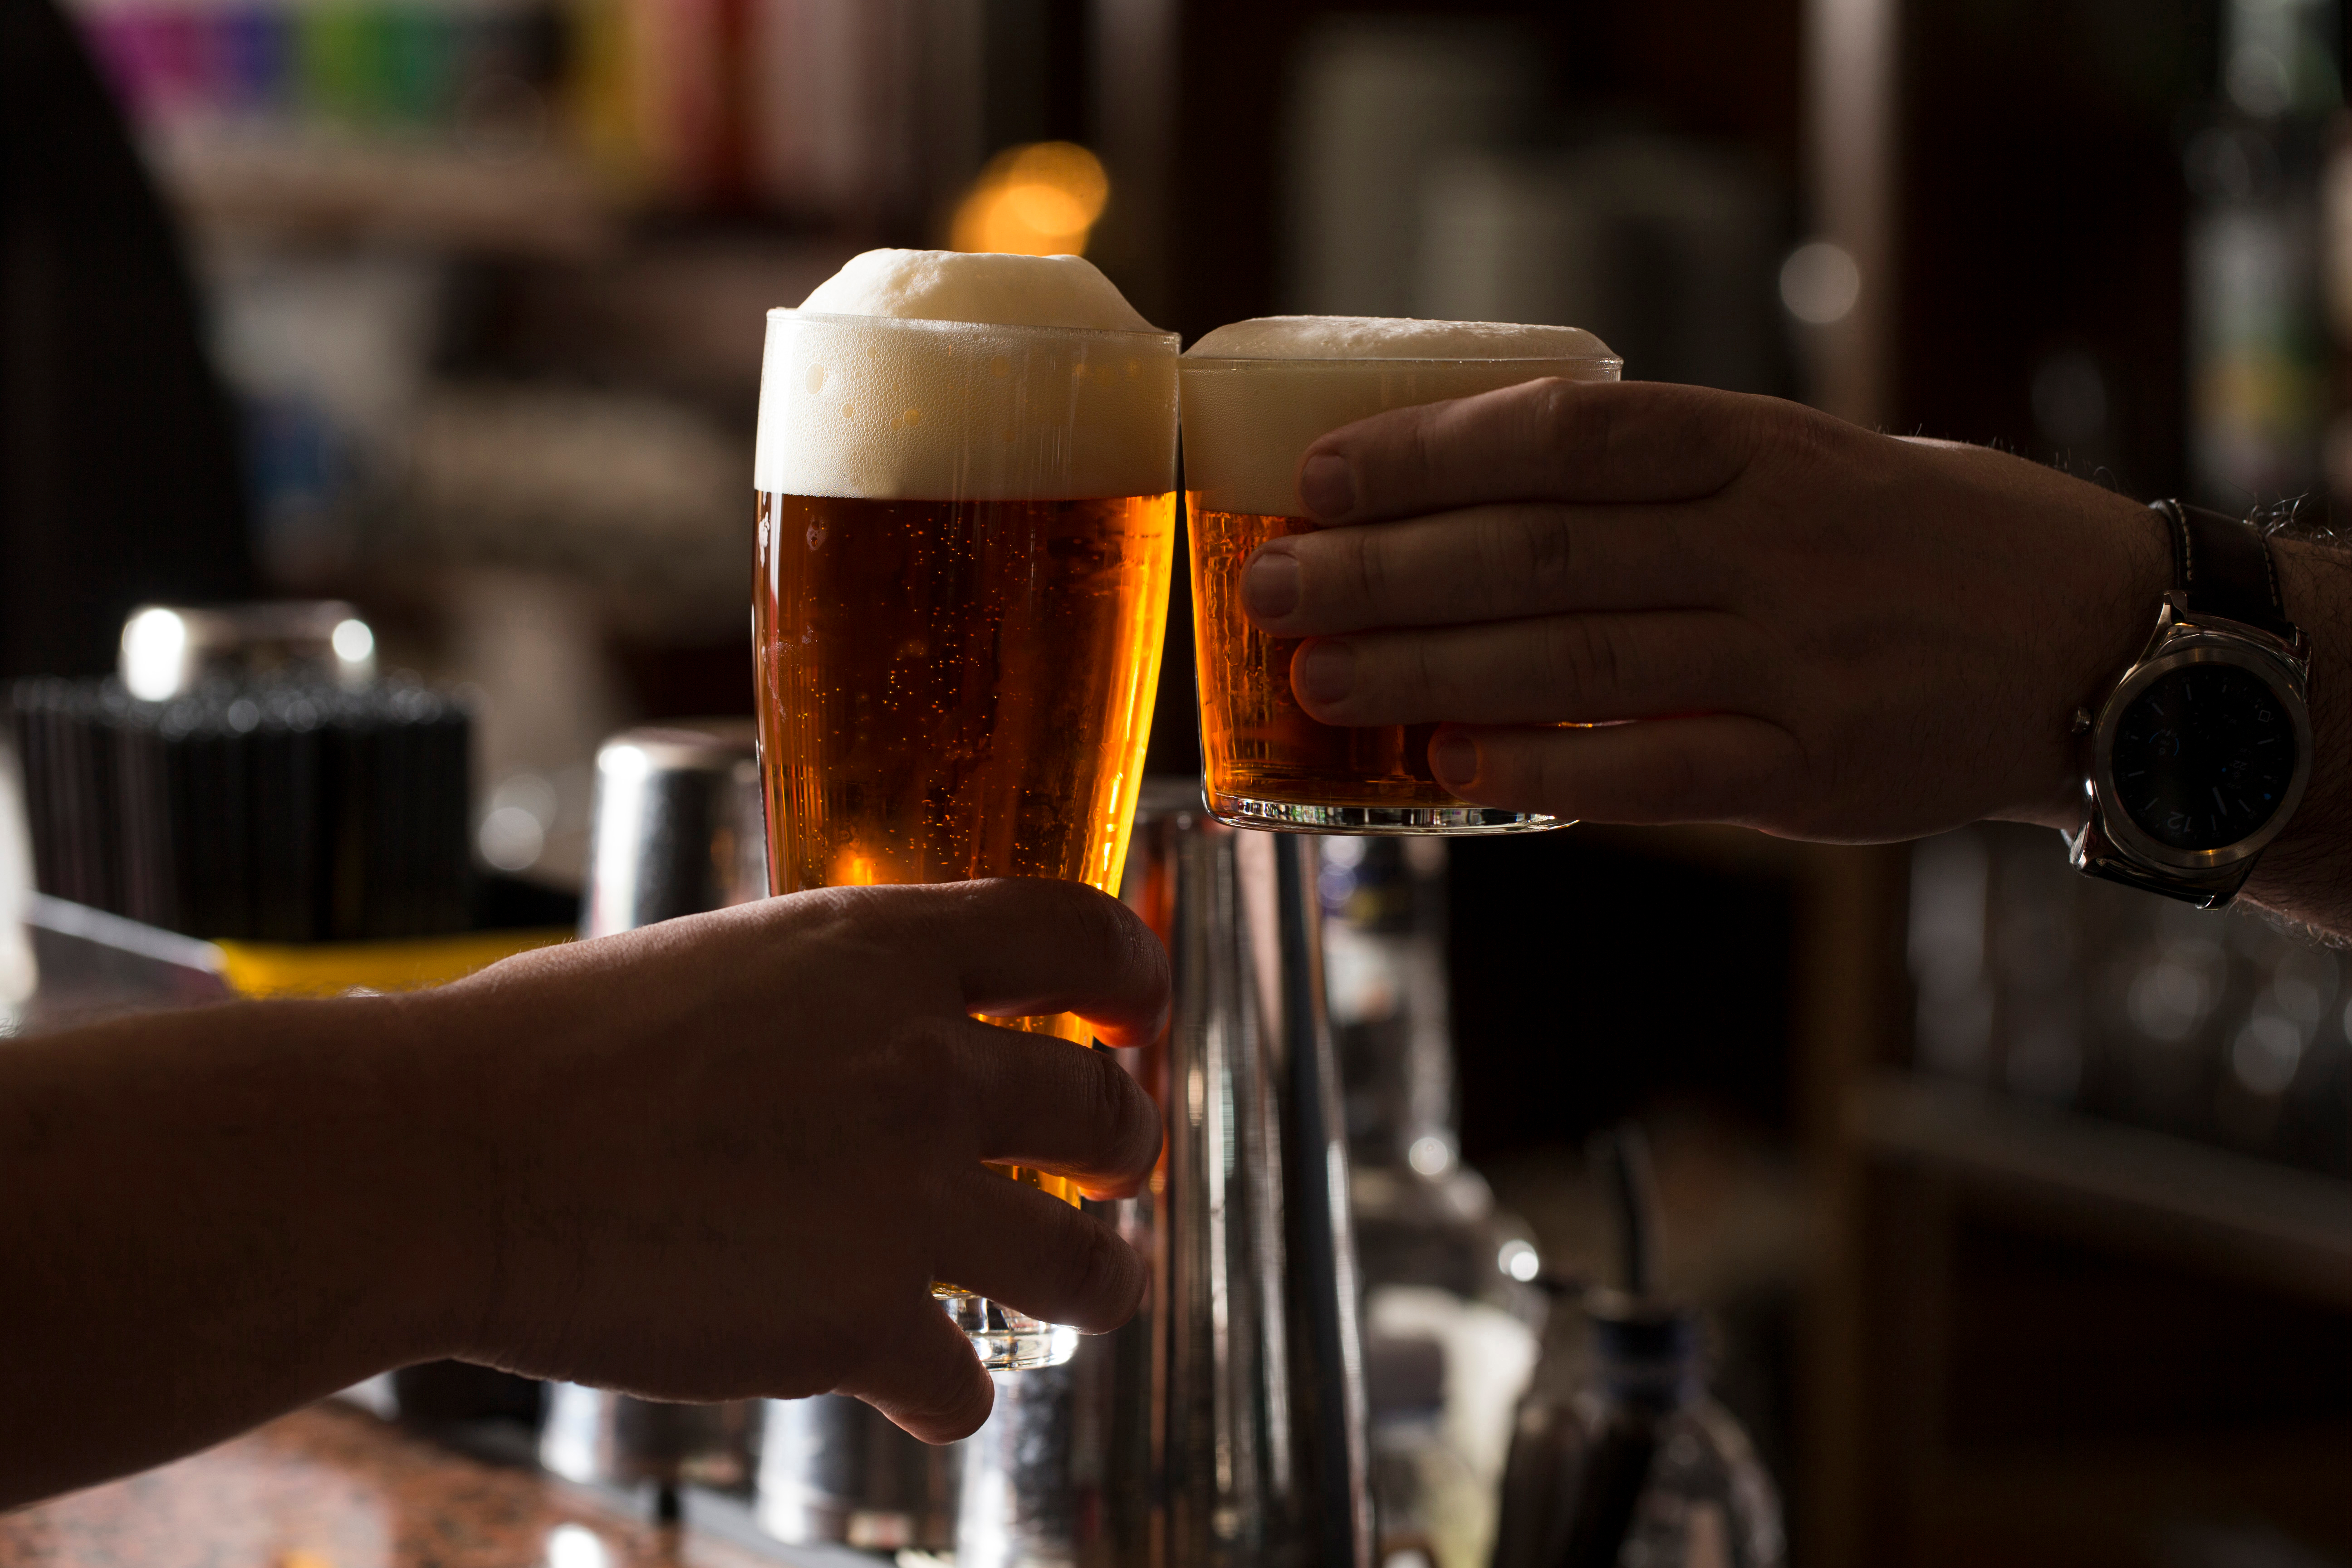 A sör hatása a májra és a vesere. Ami rosszabb a májhoz - sör vagy vodka? Biztonságos alkohol